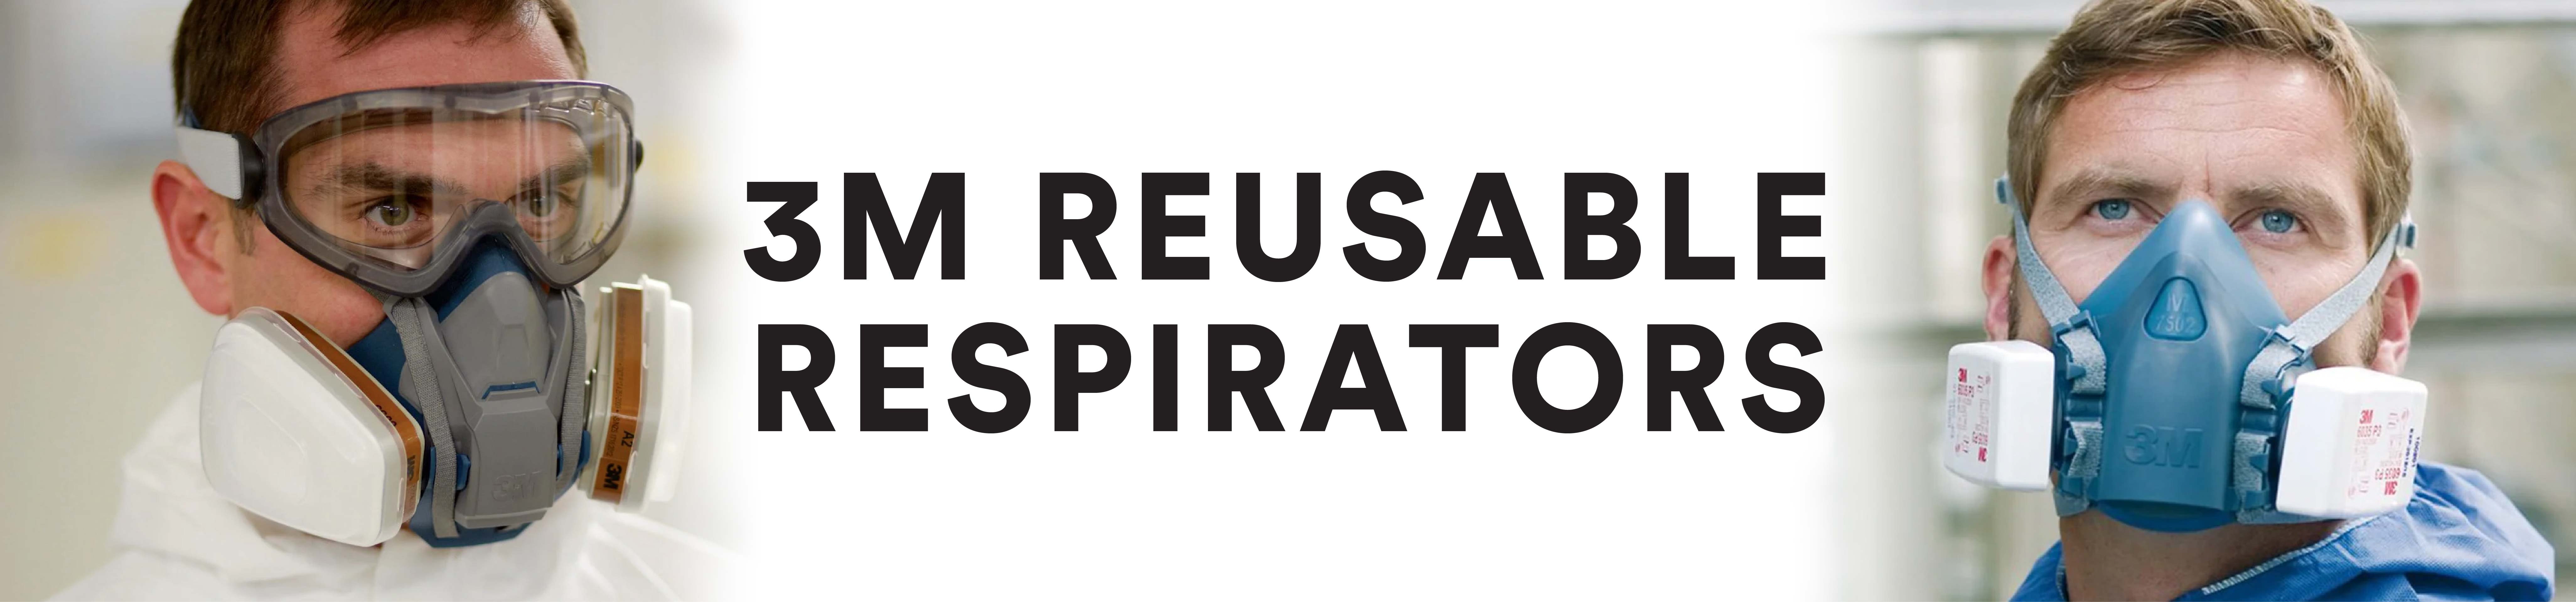 3M Reusable Respirators